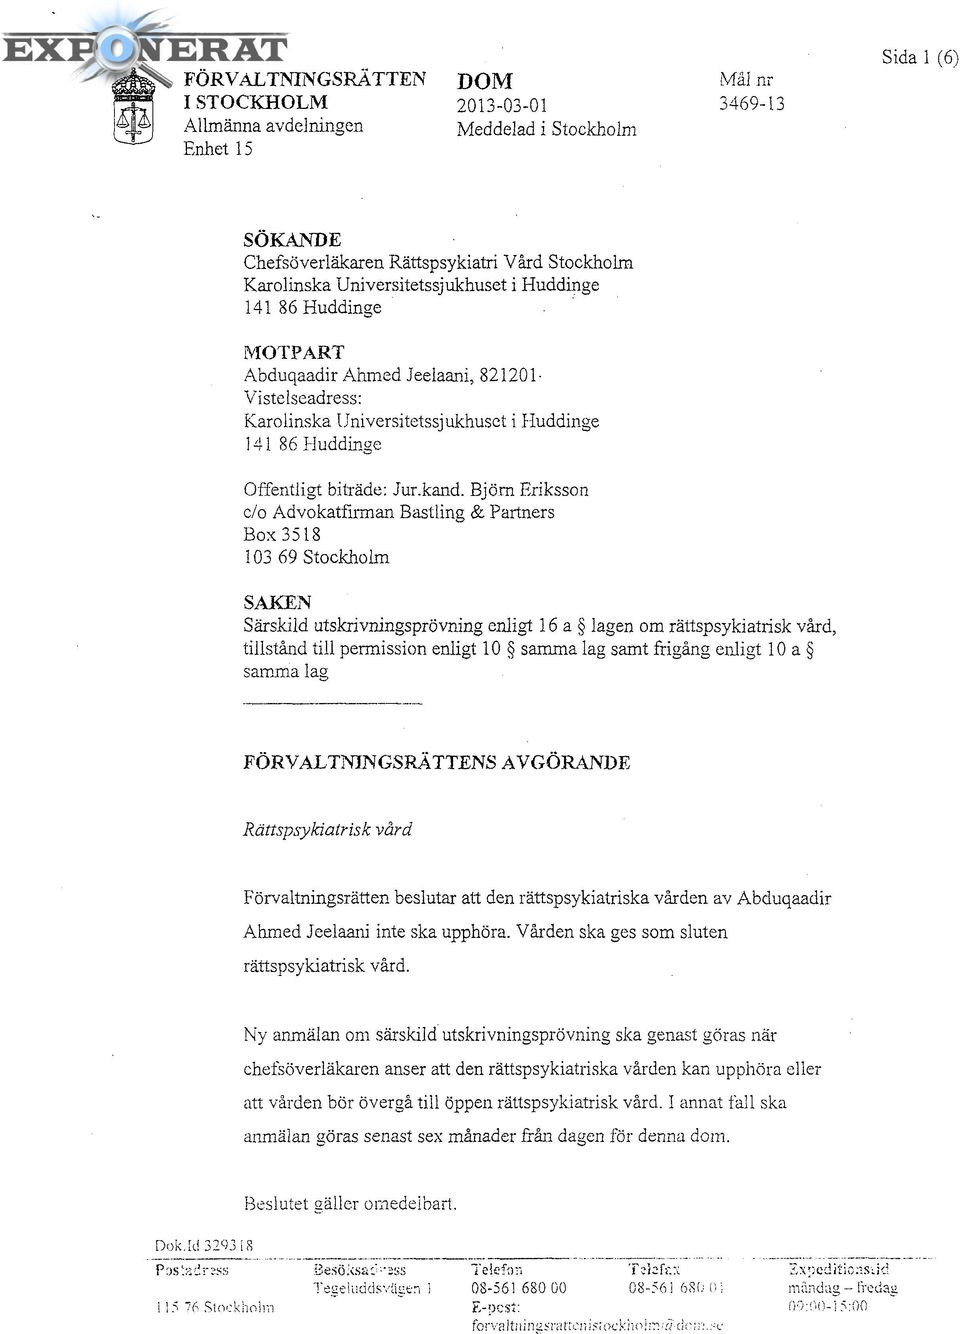 Björn Eriksson c/o Advokatfirman Bastling & Partners Box 3518 103 69 Stockholm SAKEN Särskild utskrivningsprövning enligt 16 a lagen om rättspsykiatrisk vård, tillstånd till permission enligt 10